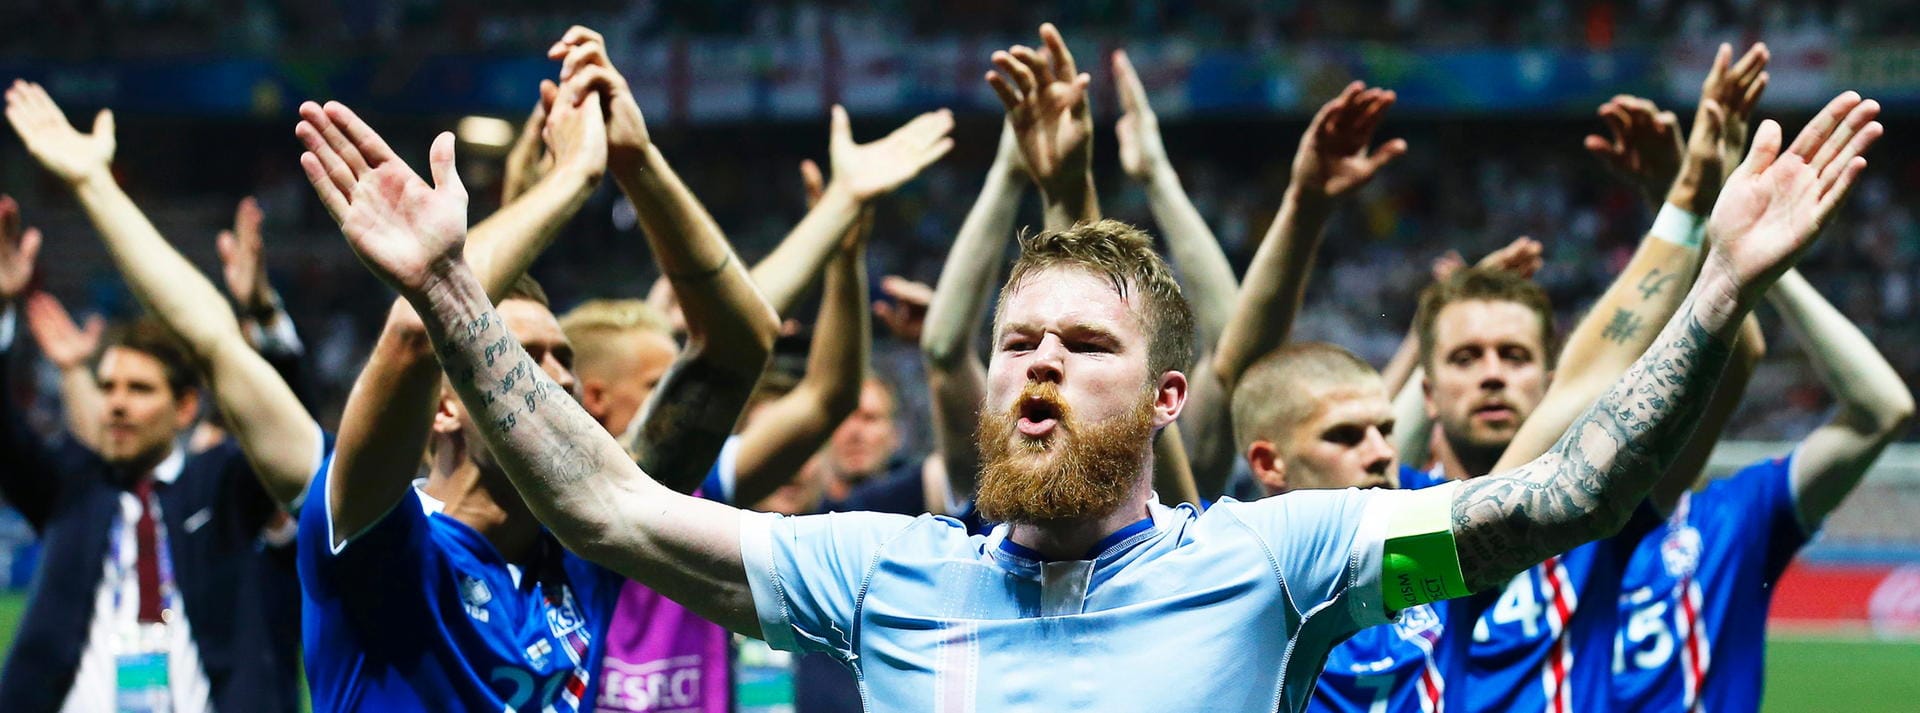 Die Isländer feiern den Einzug ins EM-Viertelfinale auf ihre Art.